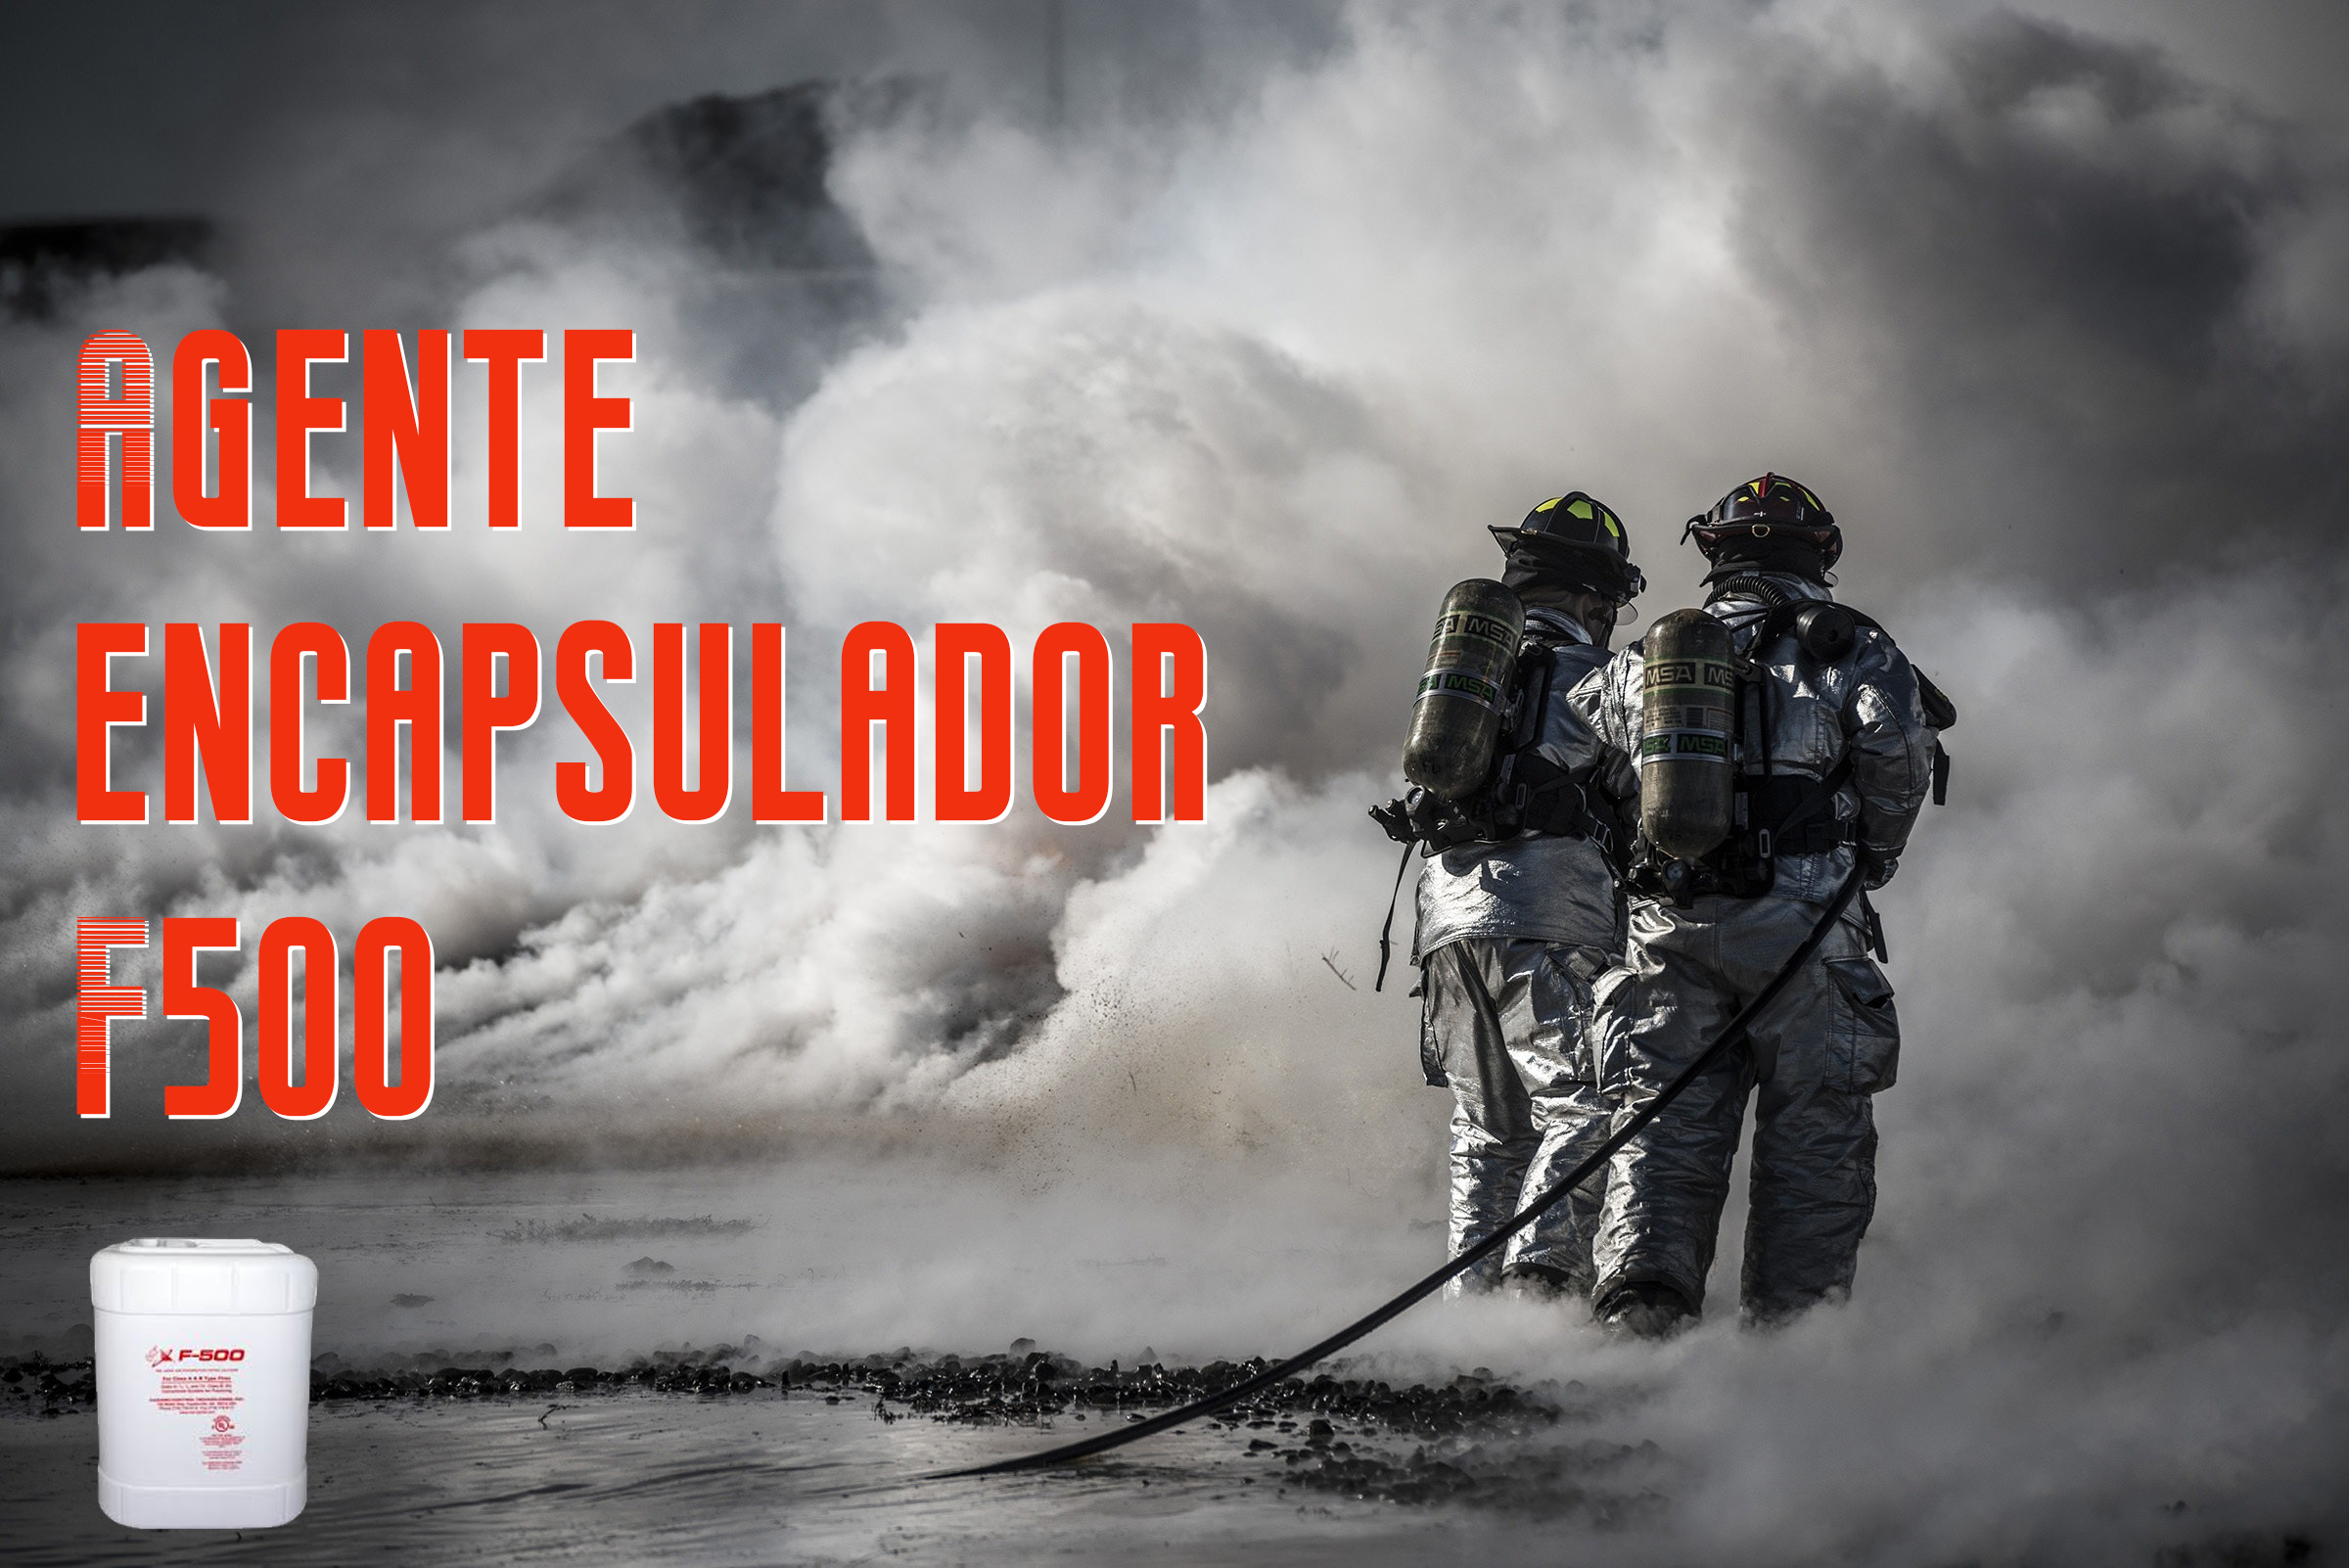 Agente encapsulador F500 - Extintores Huelva A2J